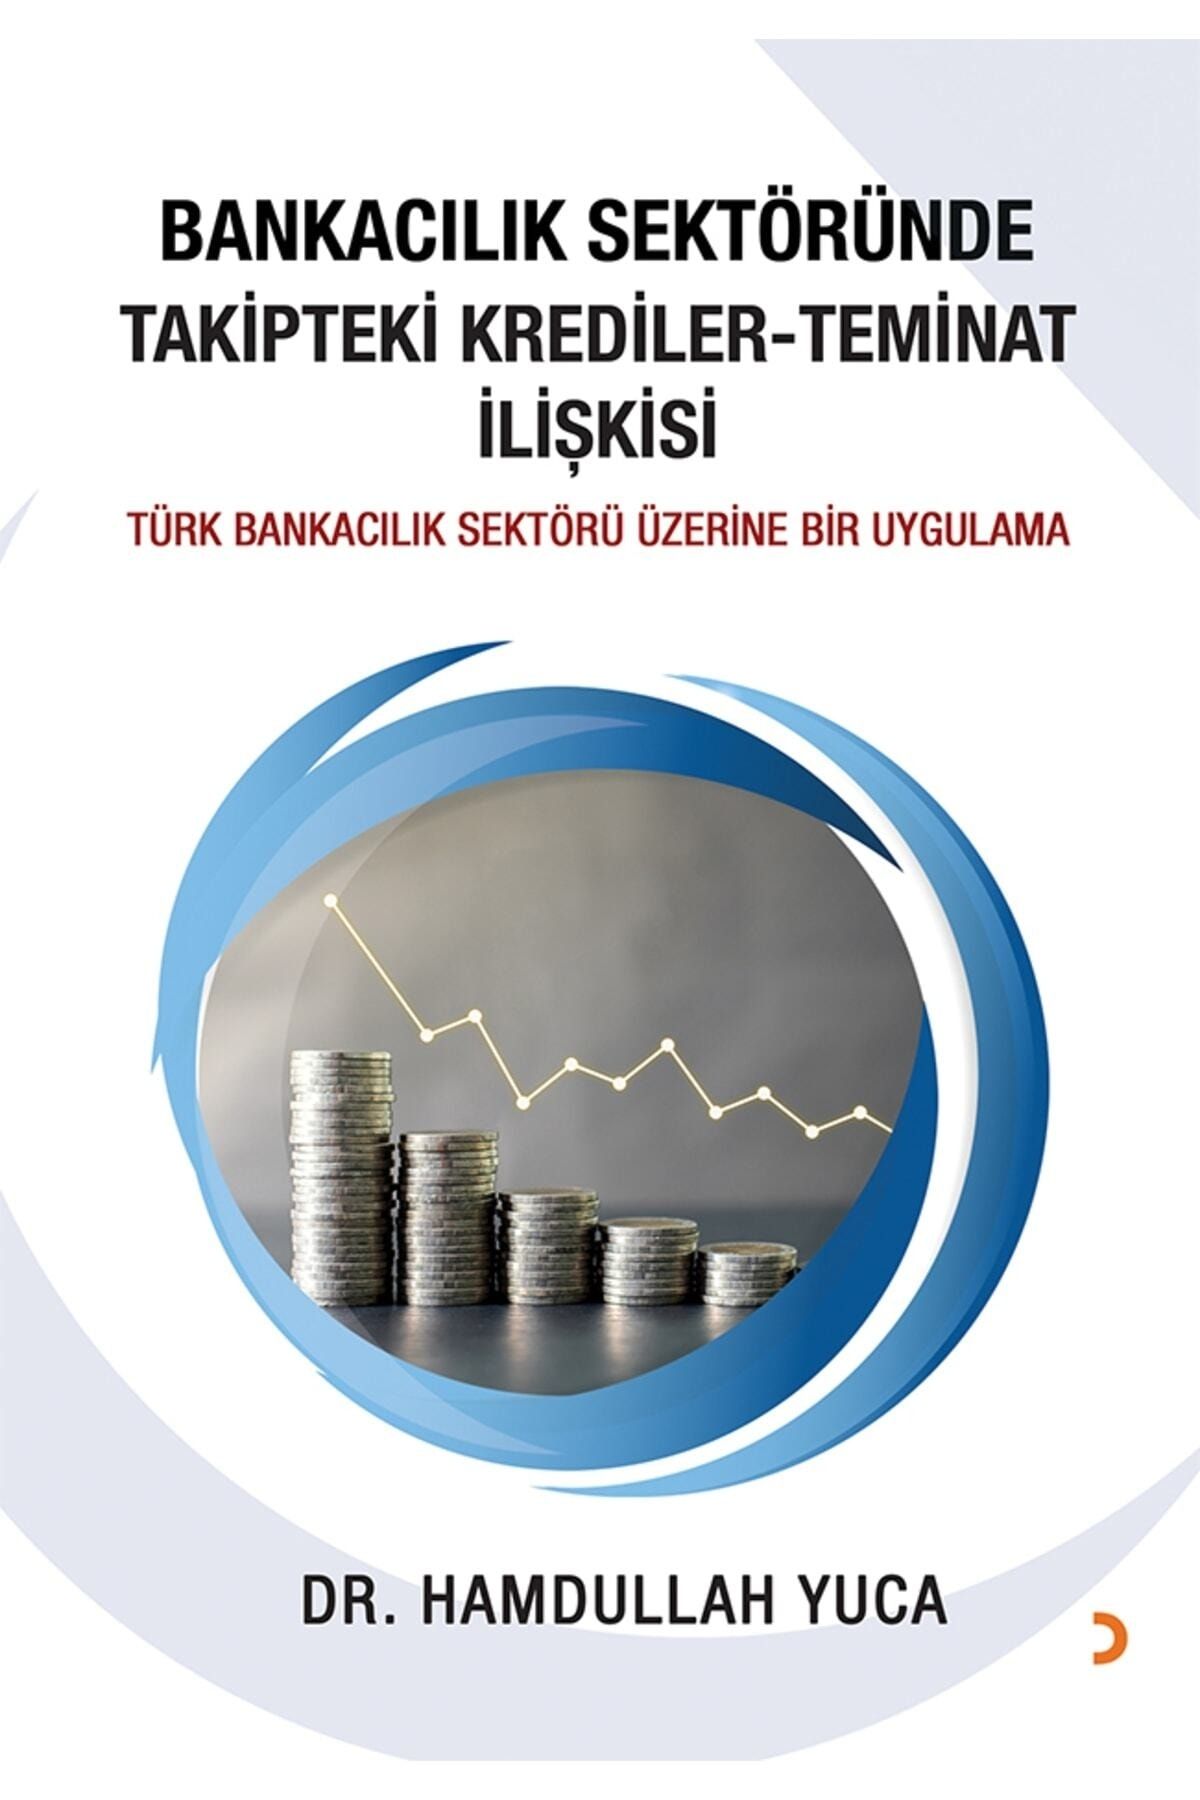 Cinius Yayınları Bankacılık Sektöründe Takipteki Krediler Teminat Ilişkisi & Hamdullah Yuca